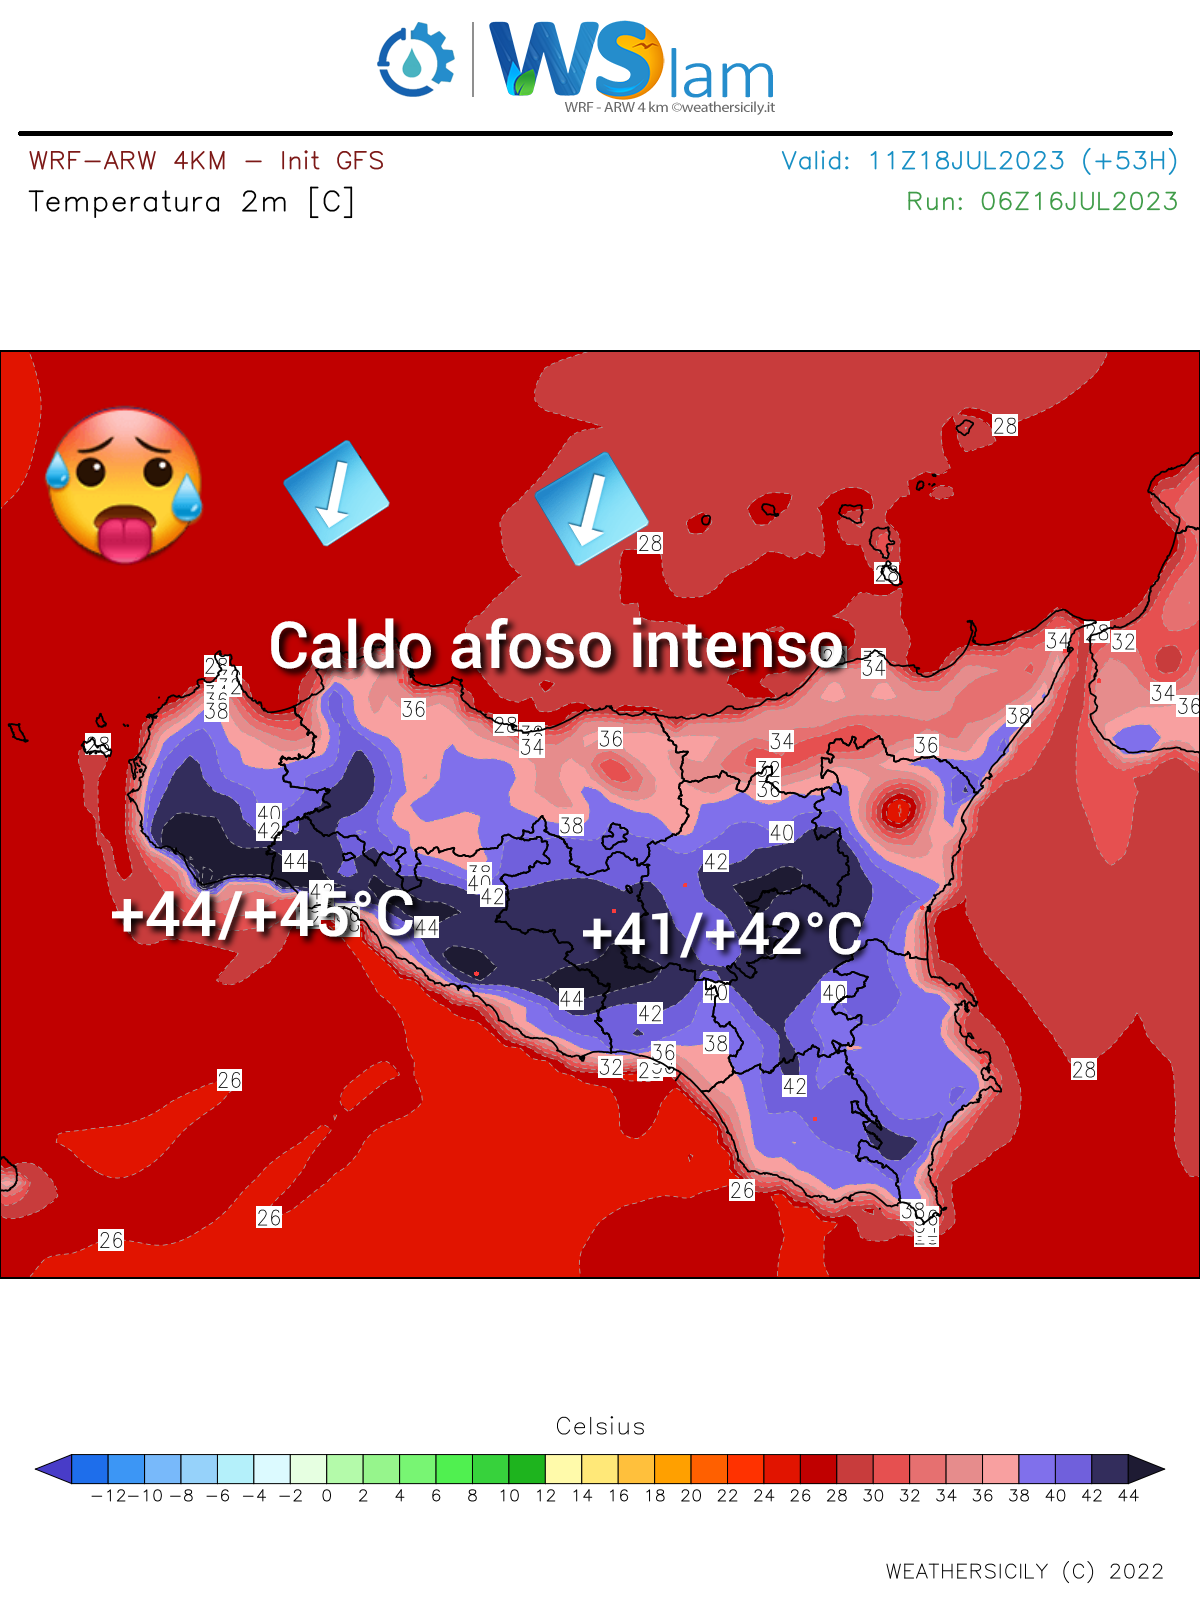 Sicilia: Inizia una settimana infuocata. Attese temperature anche oltre i +45°C per diversi giorni!